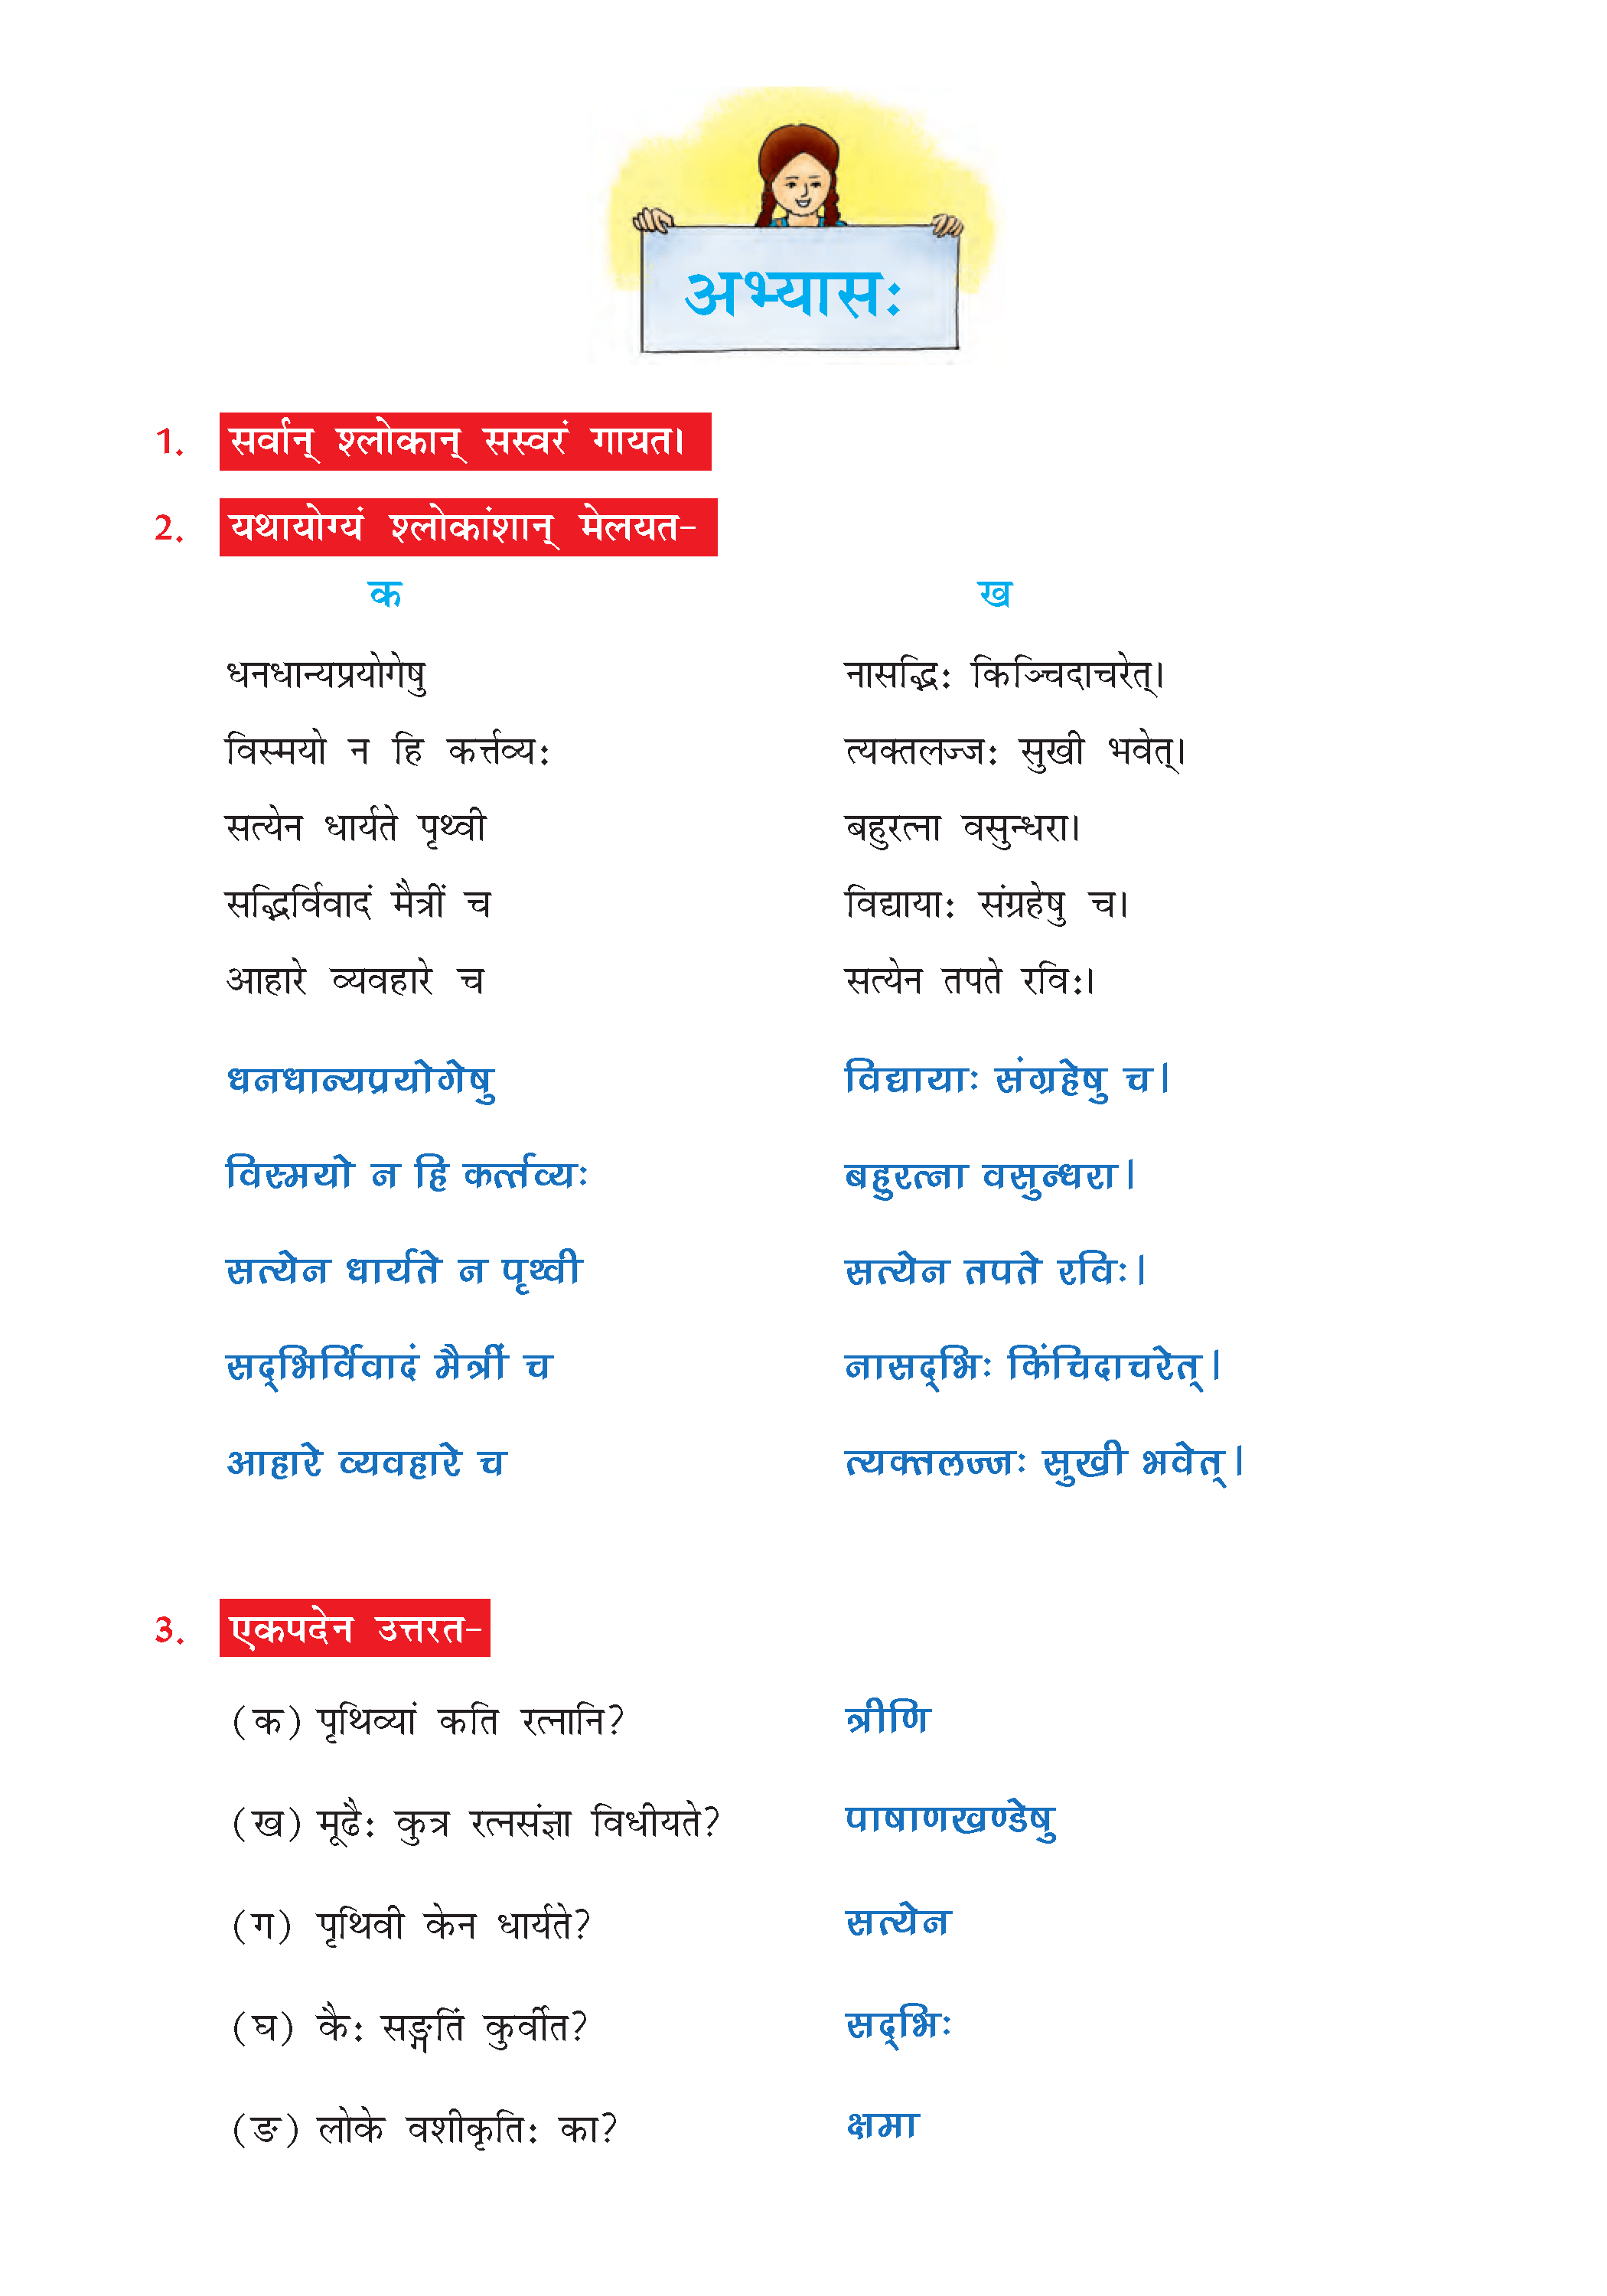 NCERT Solution For Class 7 Sanskrit Chapter 1 part 4